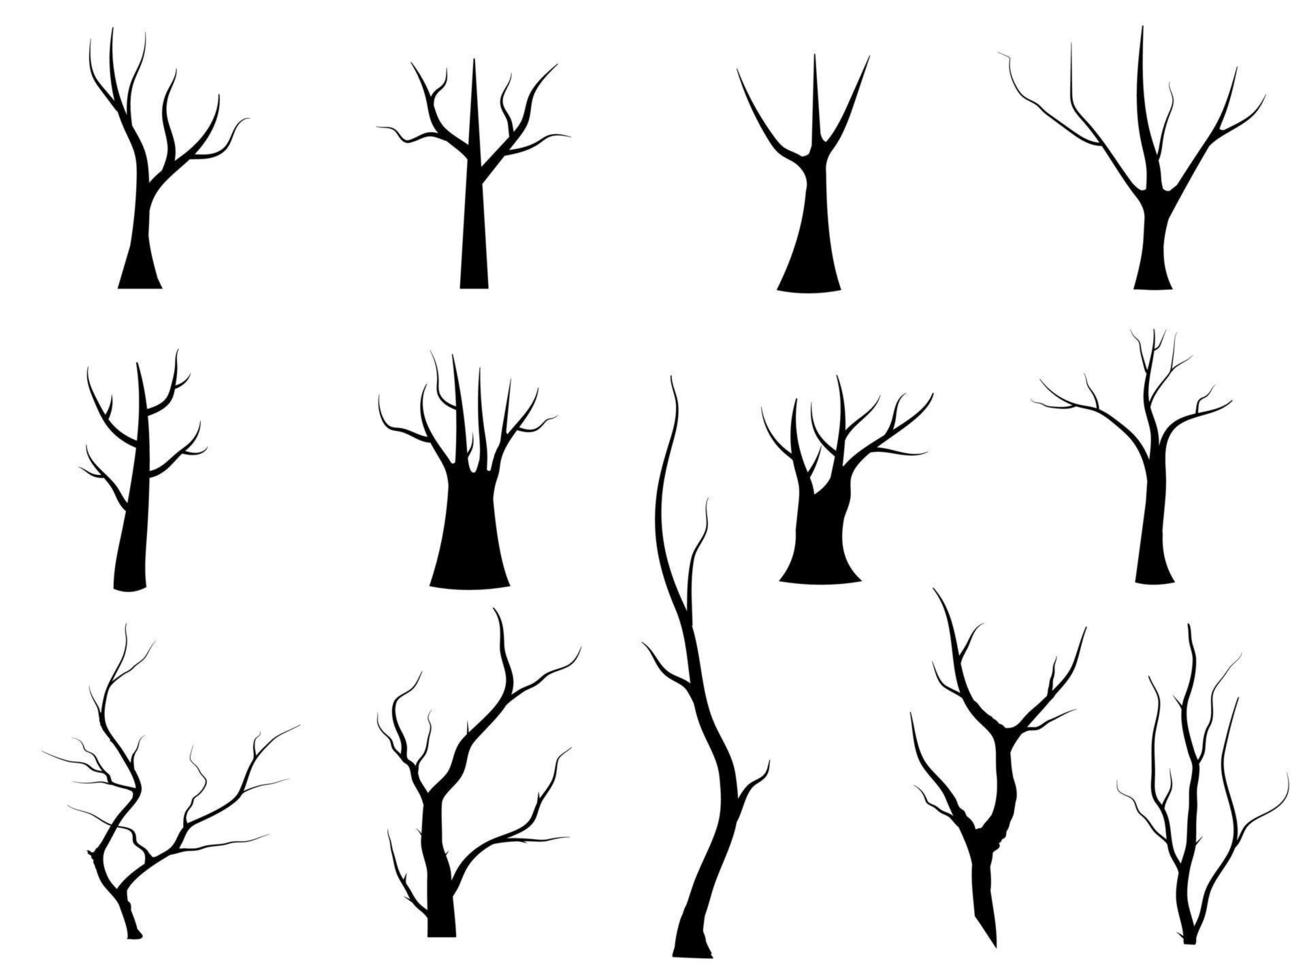 silueta de árbol de rama negra aislada sobre fondo blanco, vector dibujado a mano.